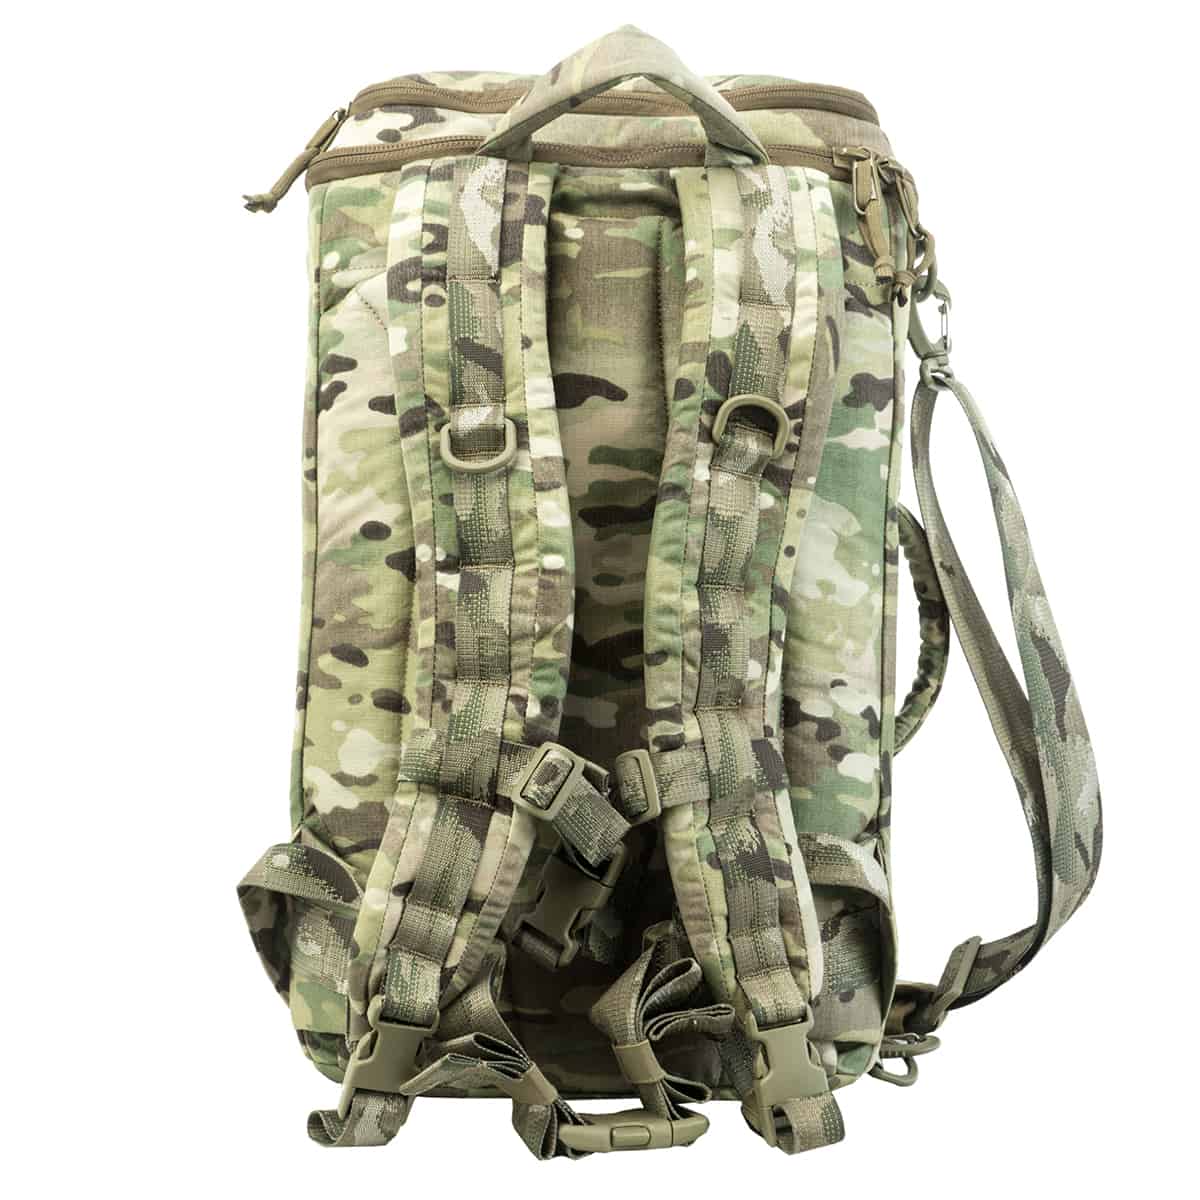 Izberite vrhunsko vojaško torbo za prenosnik Karrimor SF. Ta trpežna torba čez rame je idealna za vojaško opremo in taktične potrebe. Na voljo za prodajo.